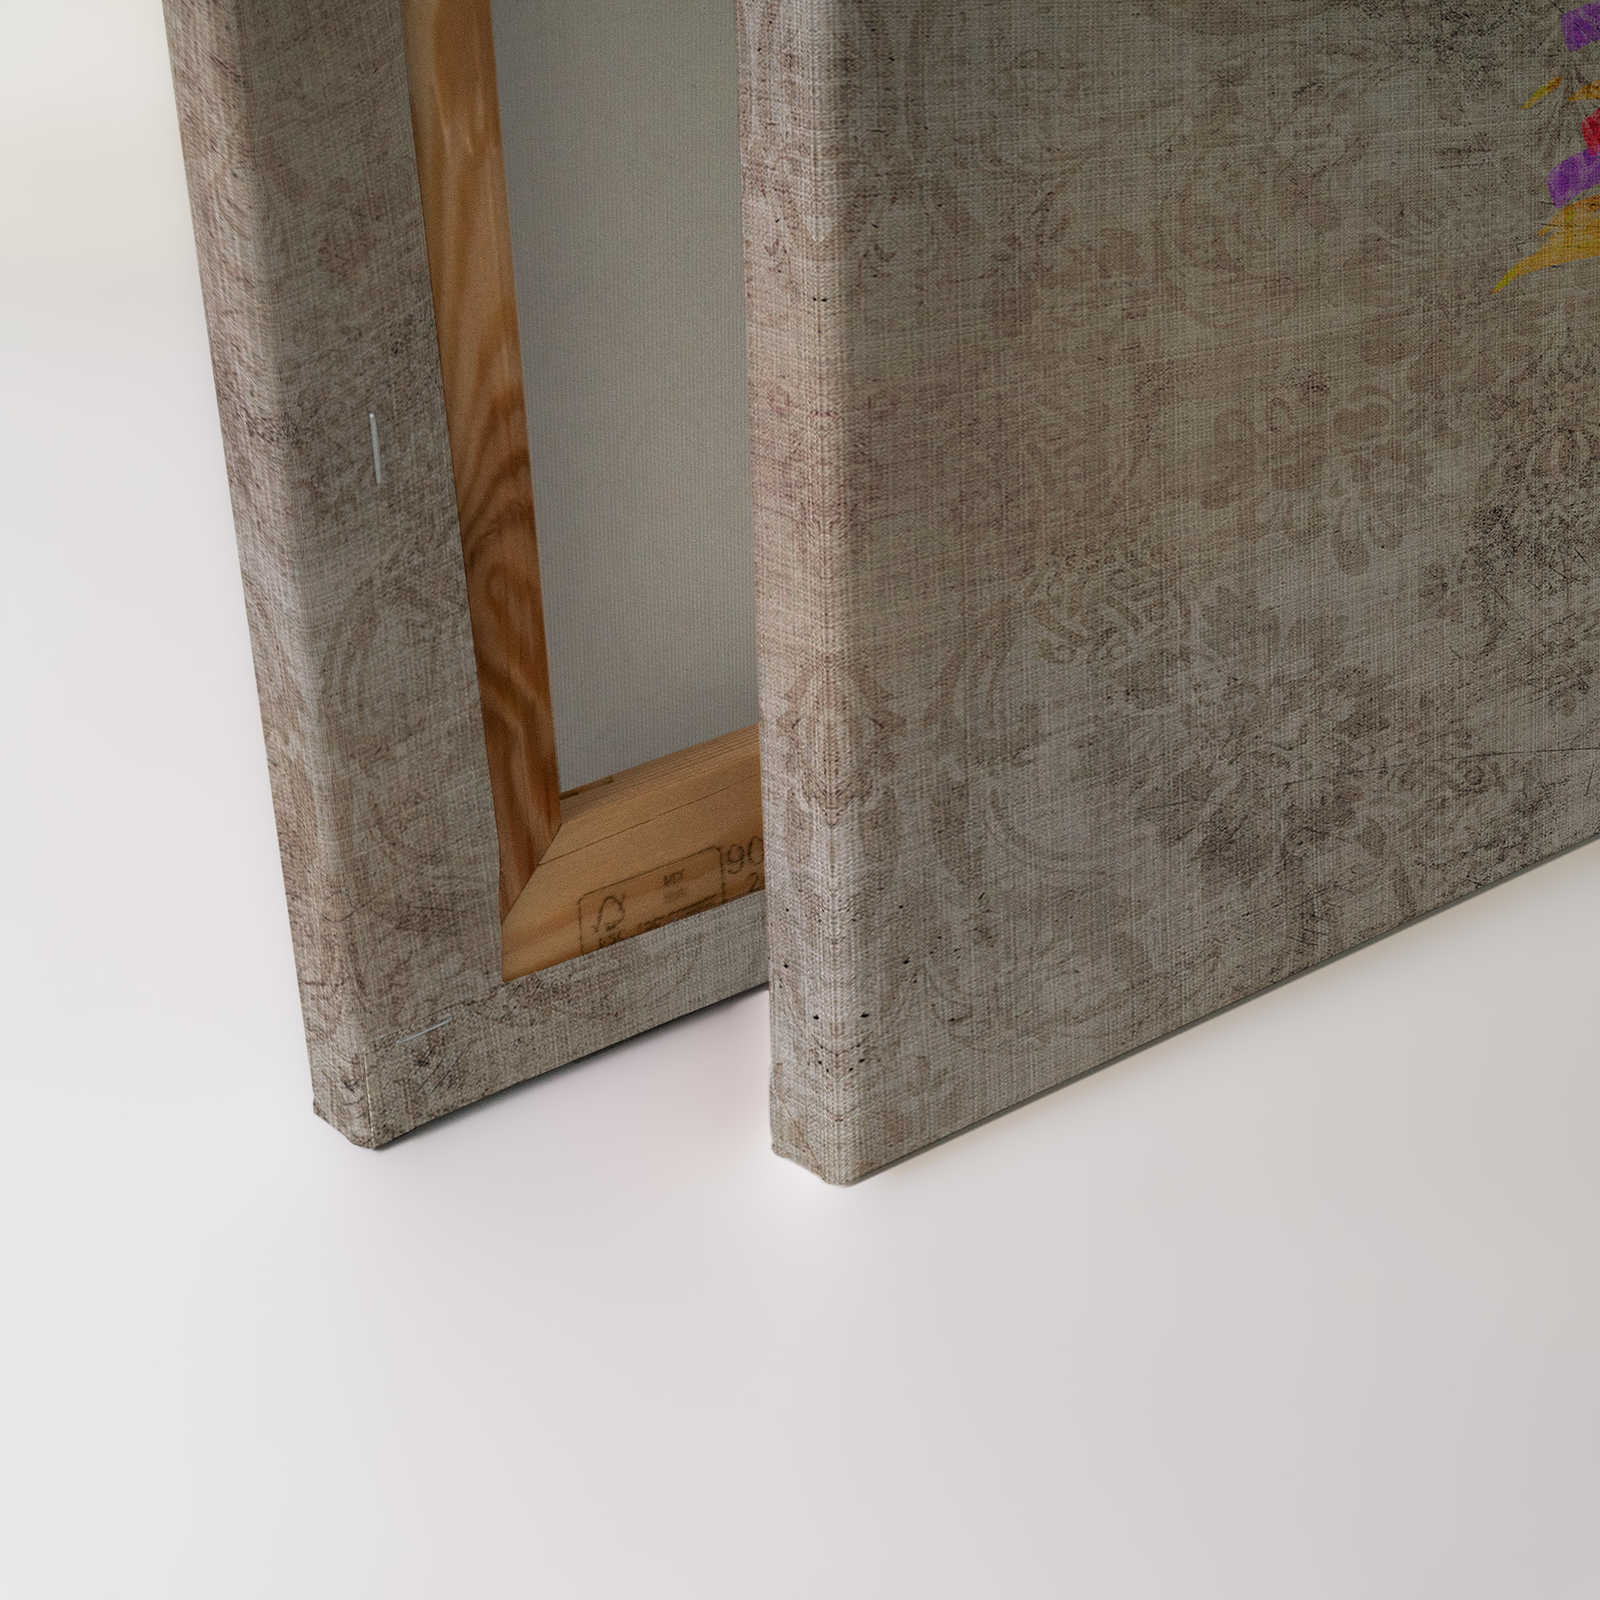             Pavo real 1 - Cuadro en lienzo de estructura de lino natural con pavo real en colores neón - 0,90 m x 0,60 m
        